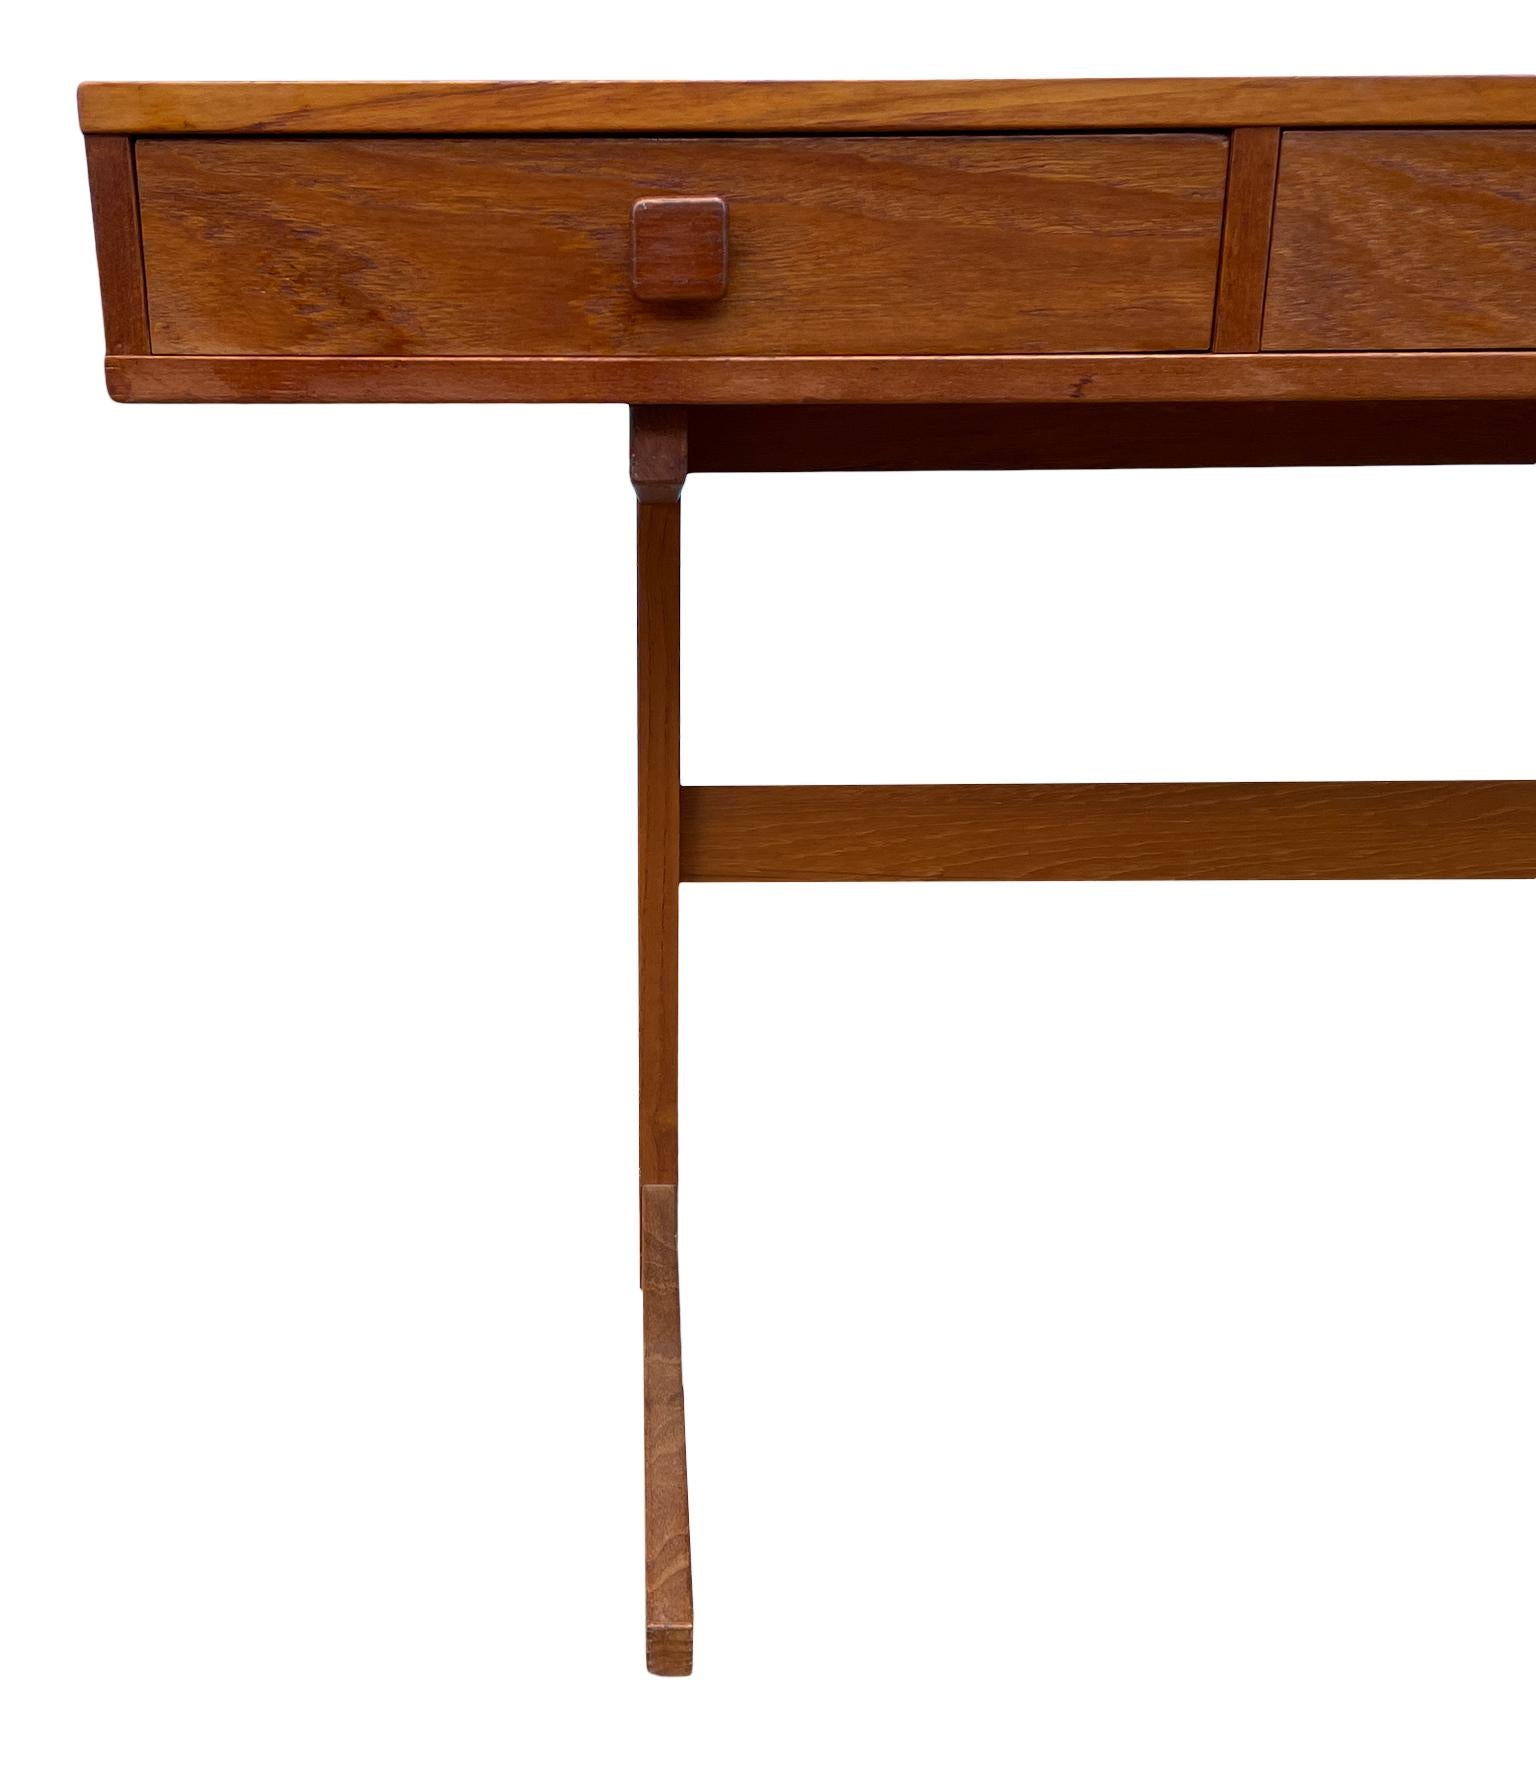 Midcentury Danish Modern teak Desk by Georg Petersens 3 drawer 4